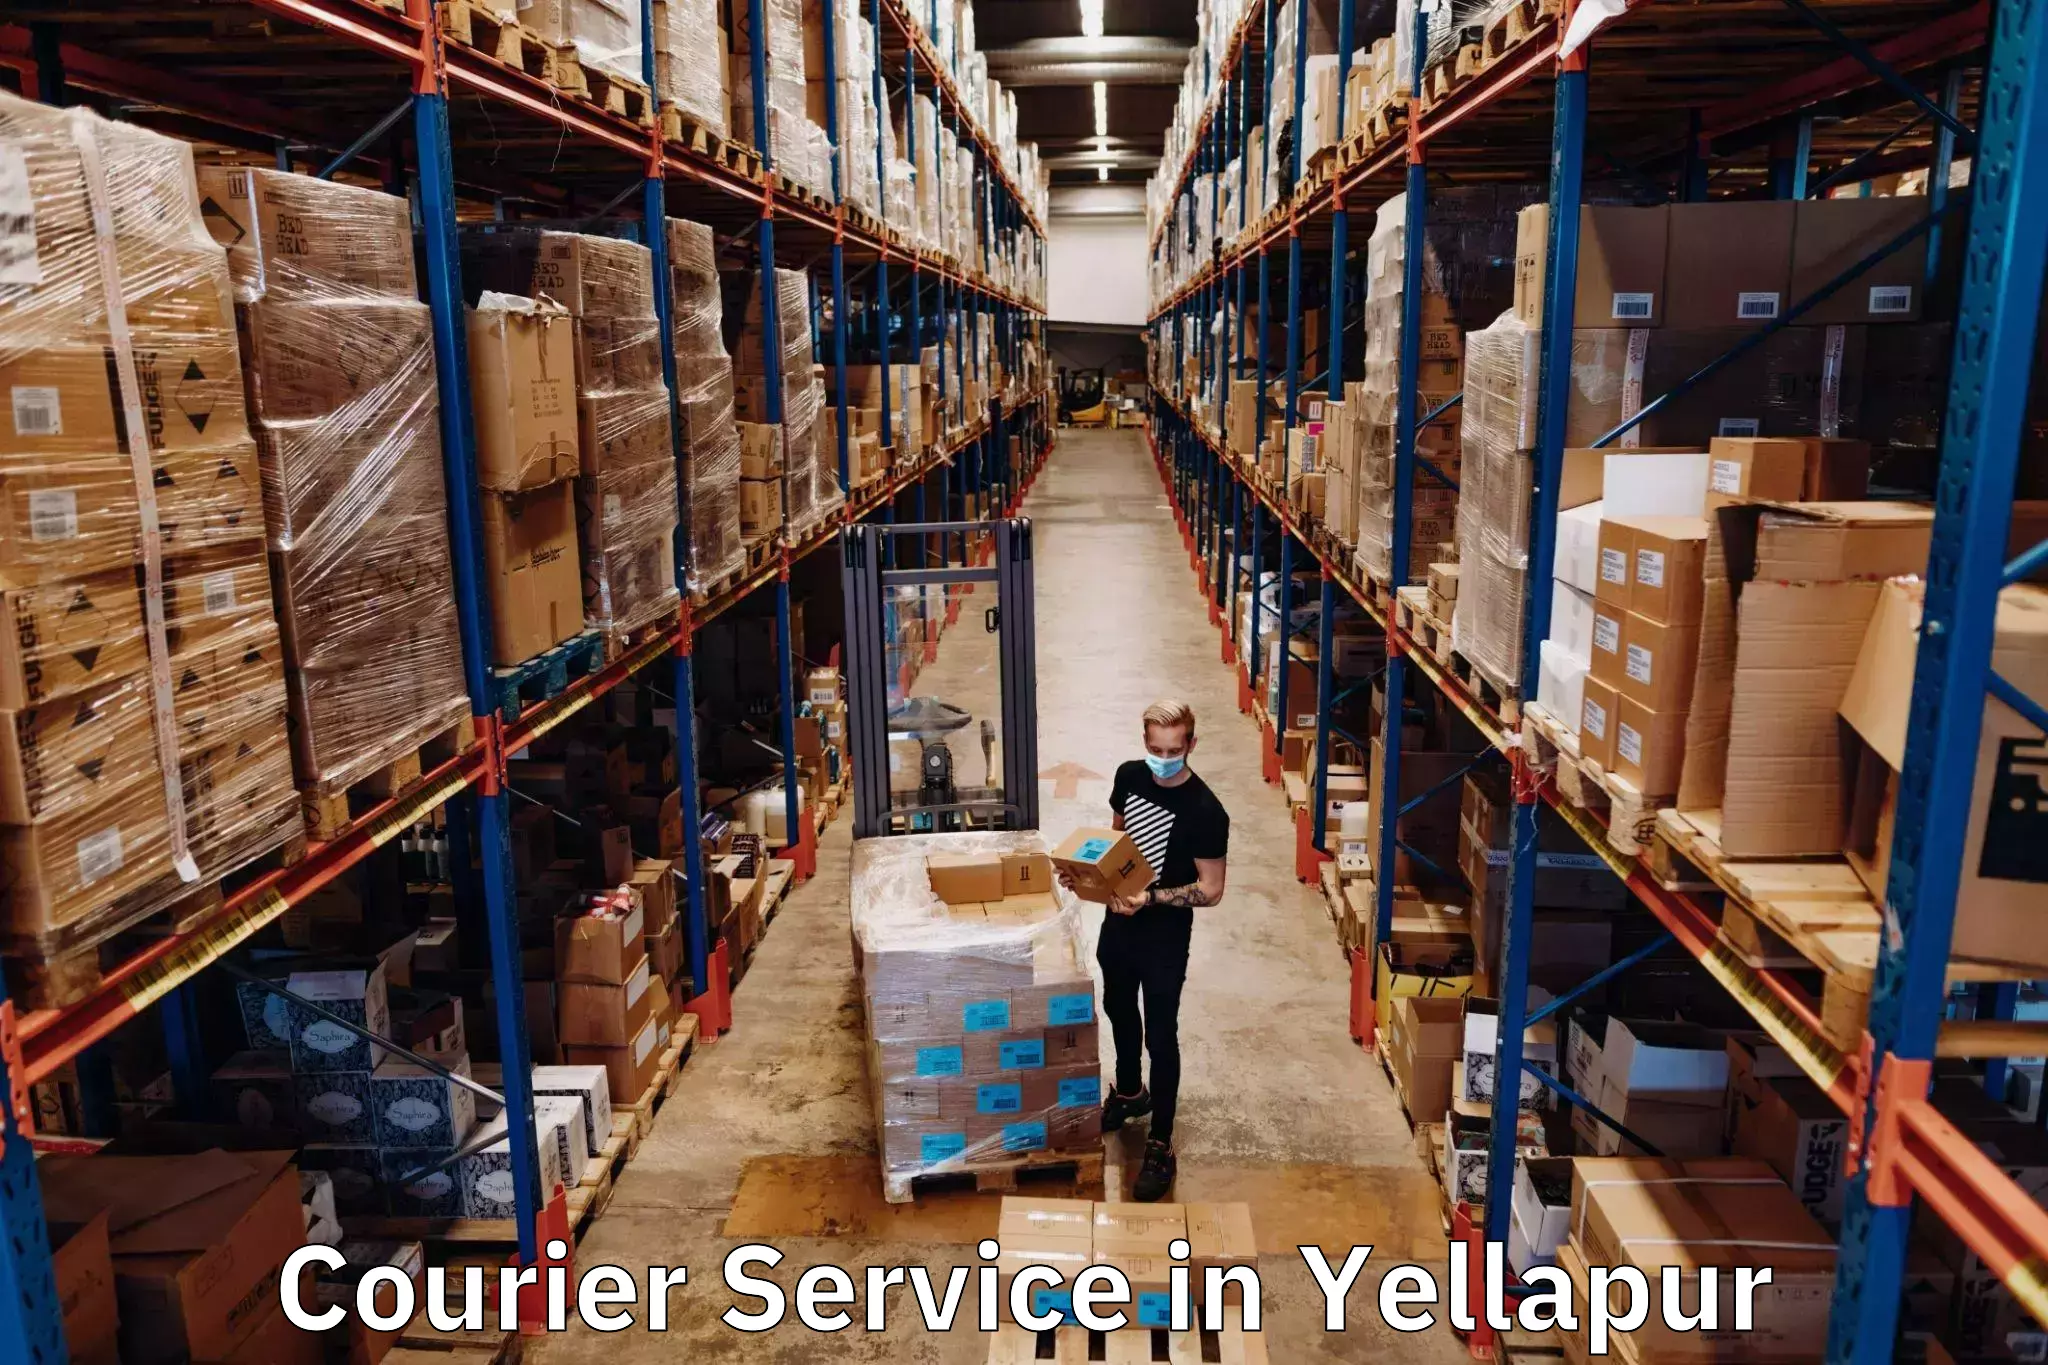 Premium courier services in Yellapur